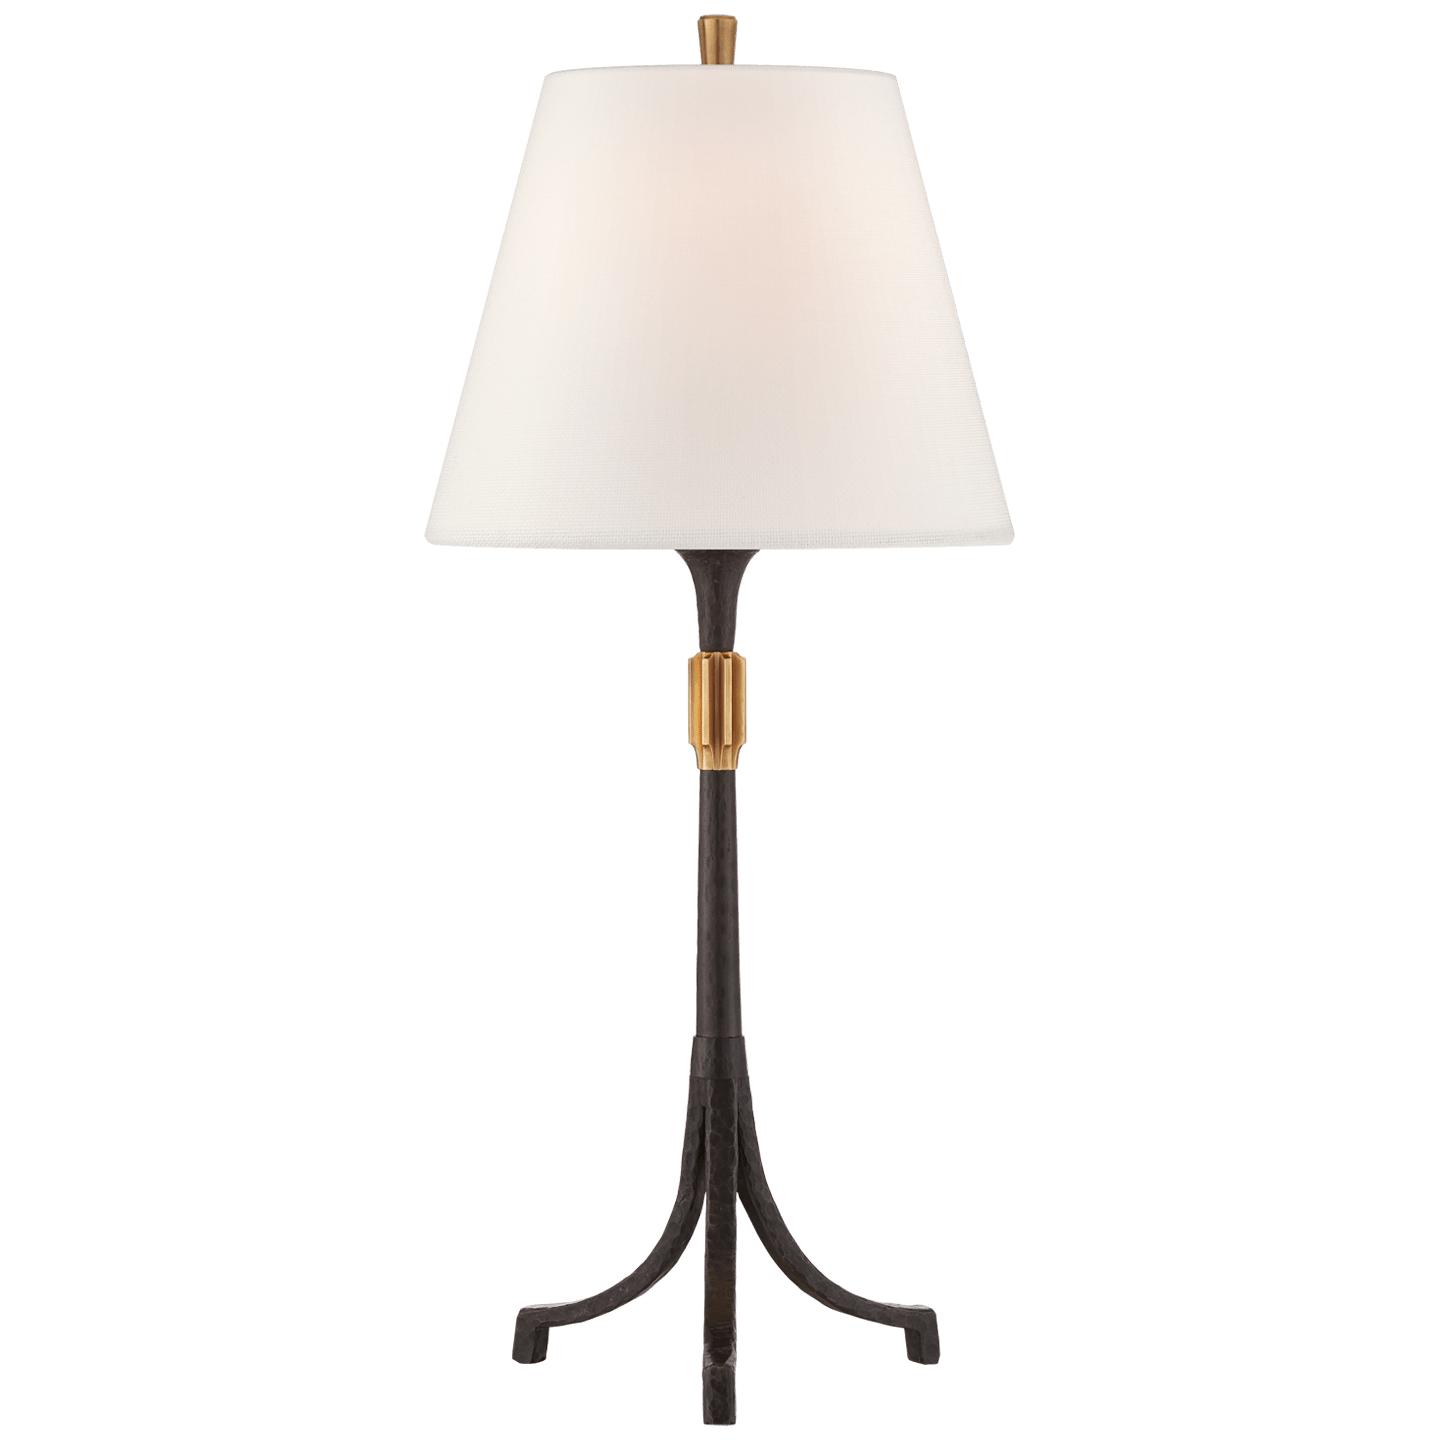 Купить Настольная лампа Arturo Medium Forged Table Lamp в интернет-магазине roooms.ru